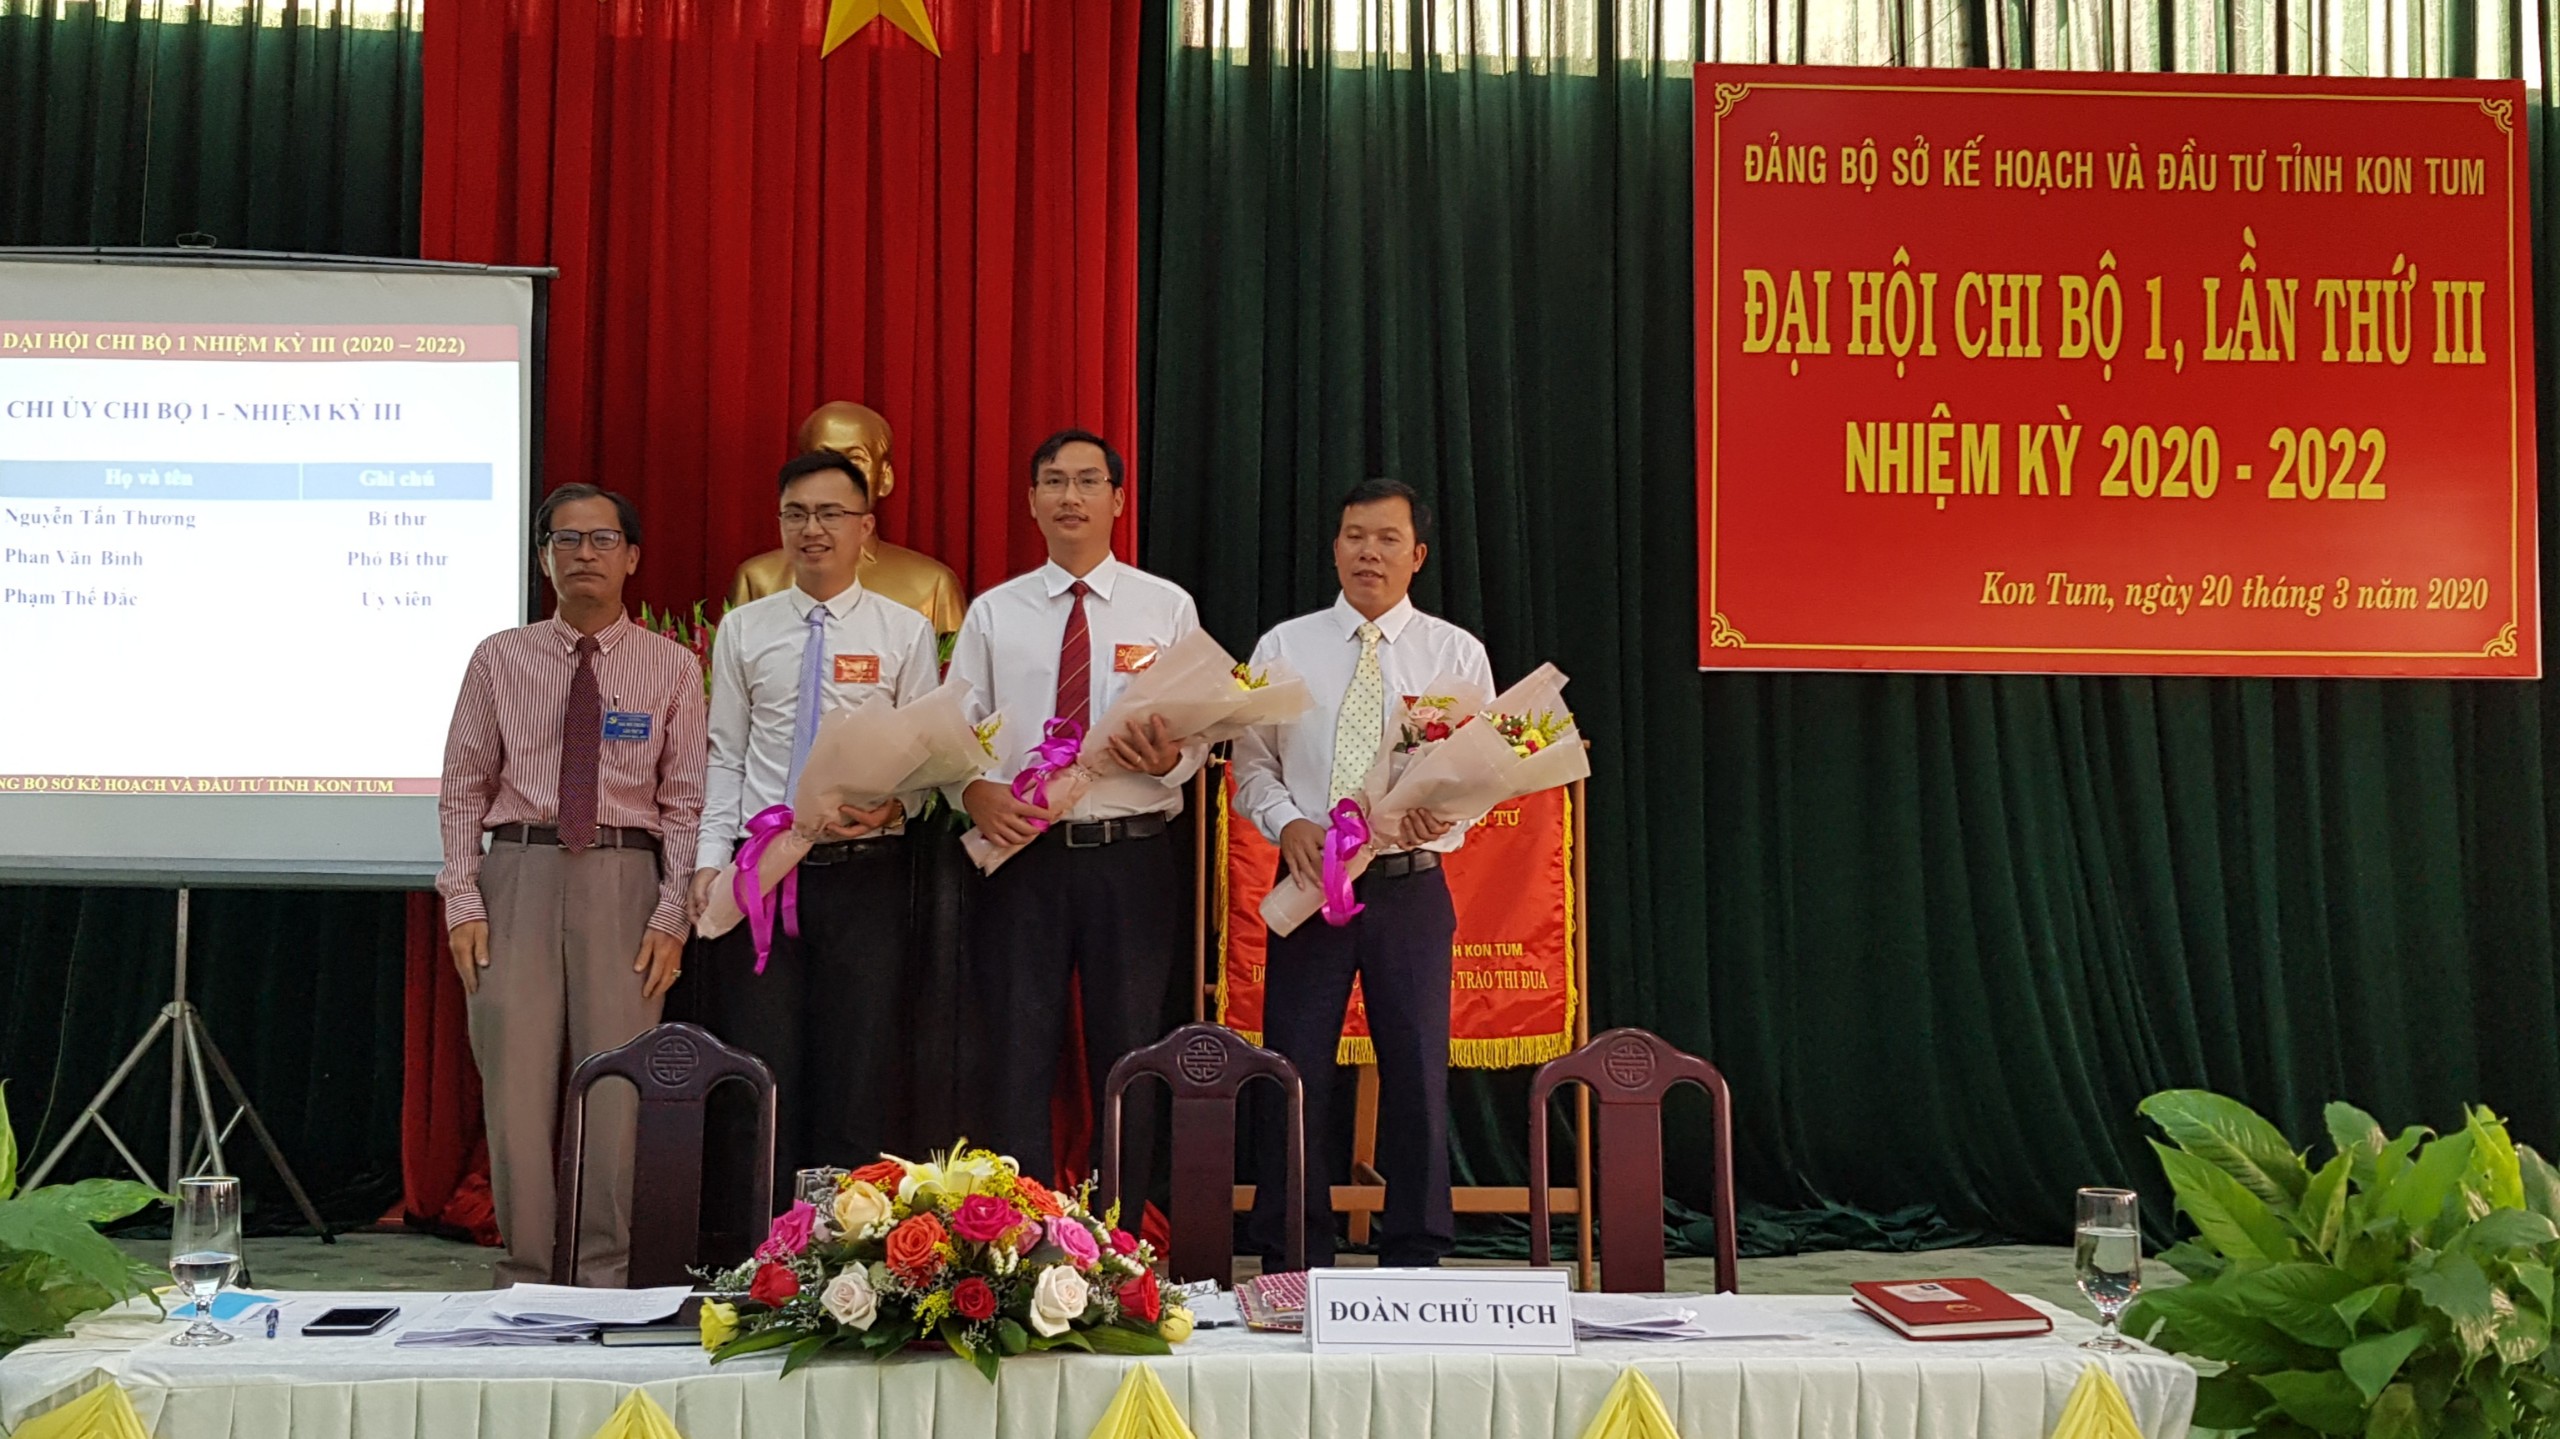 Đồng chí Ngô Việt Thành tặng hoa chúc mừng Cấp ủy Chi bộ 1, nhiệm kỳ 2020-2022